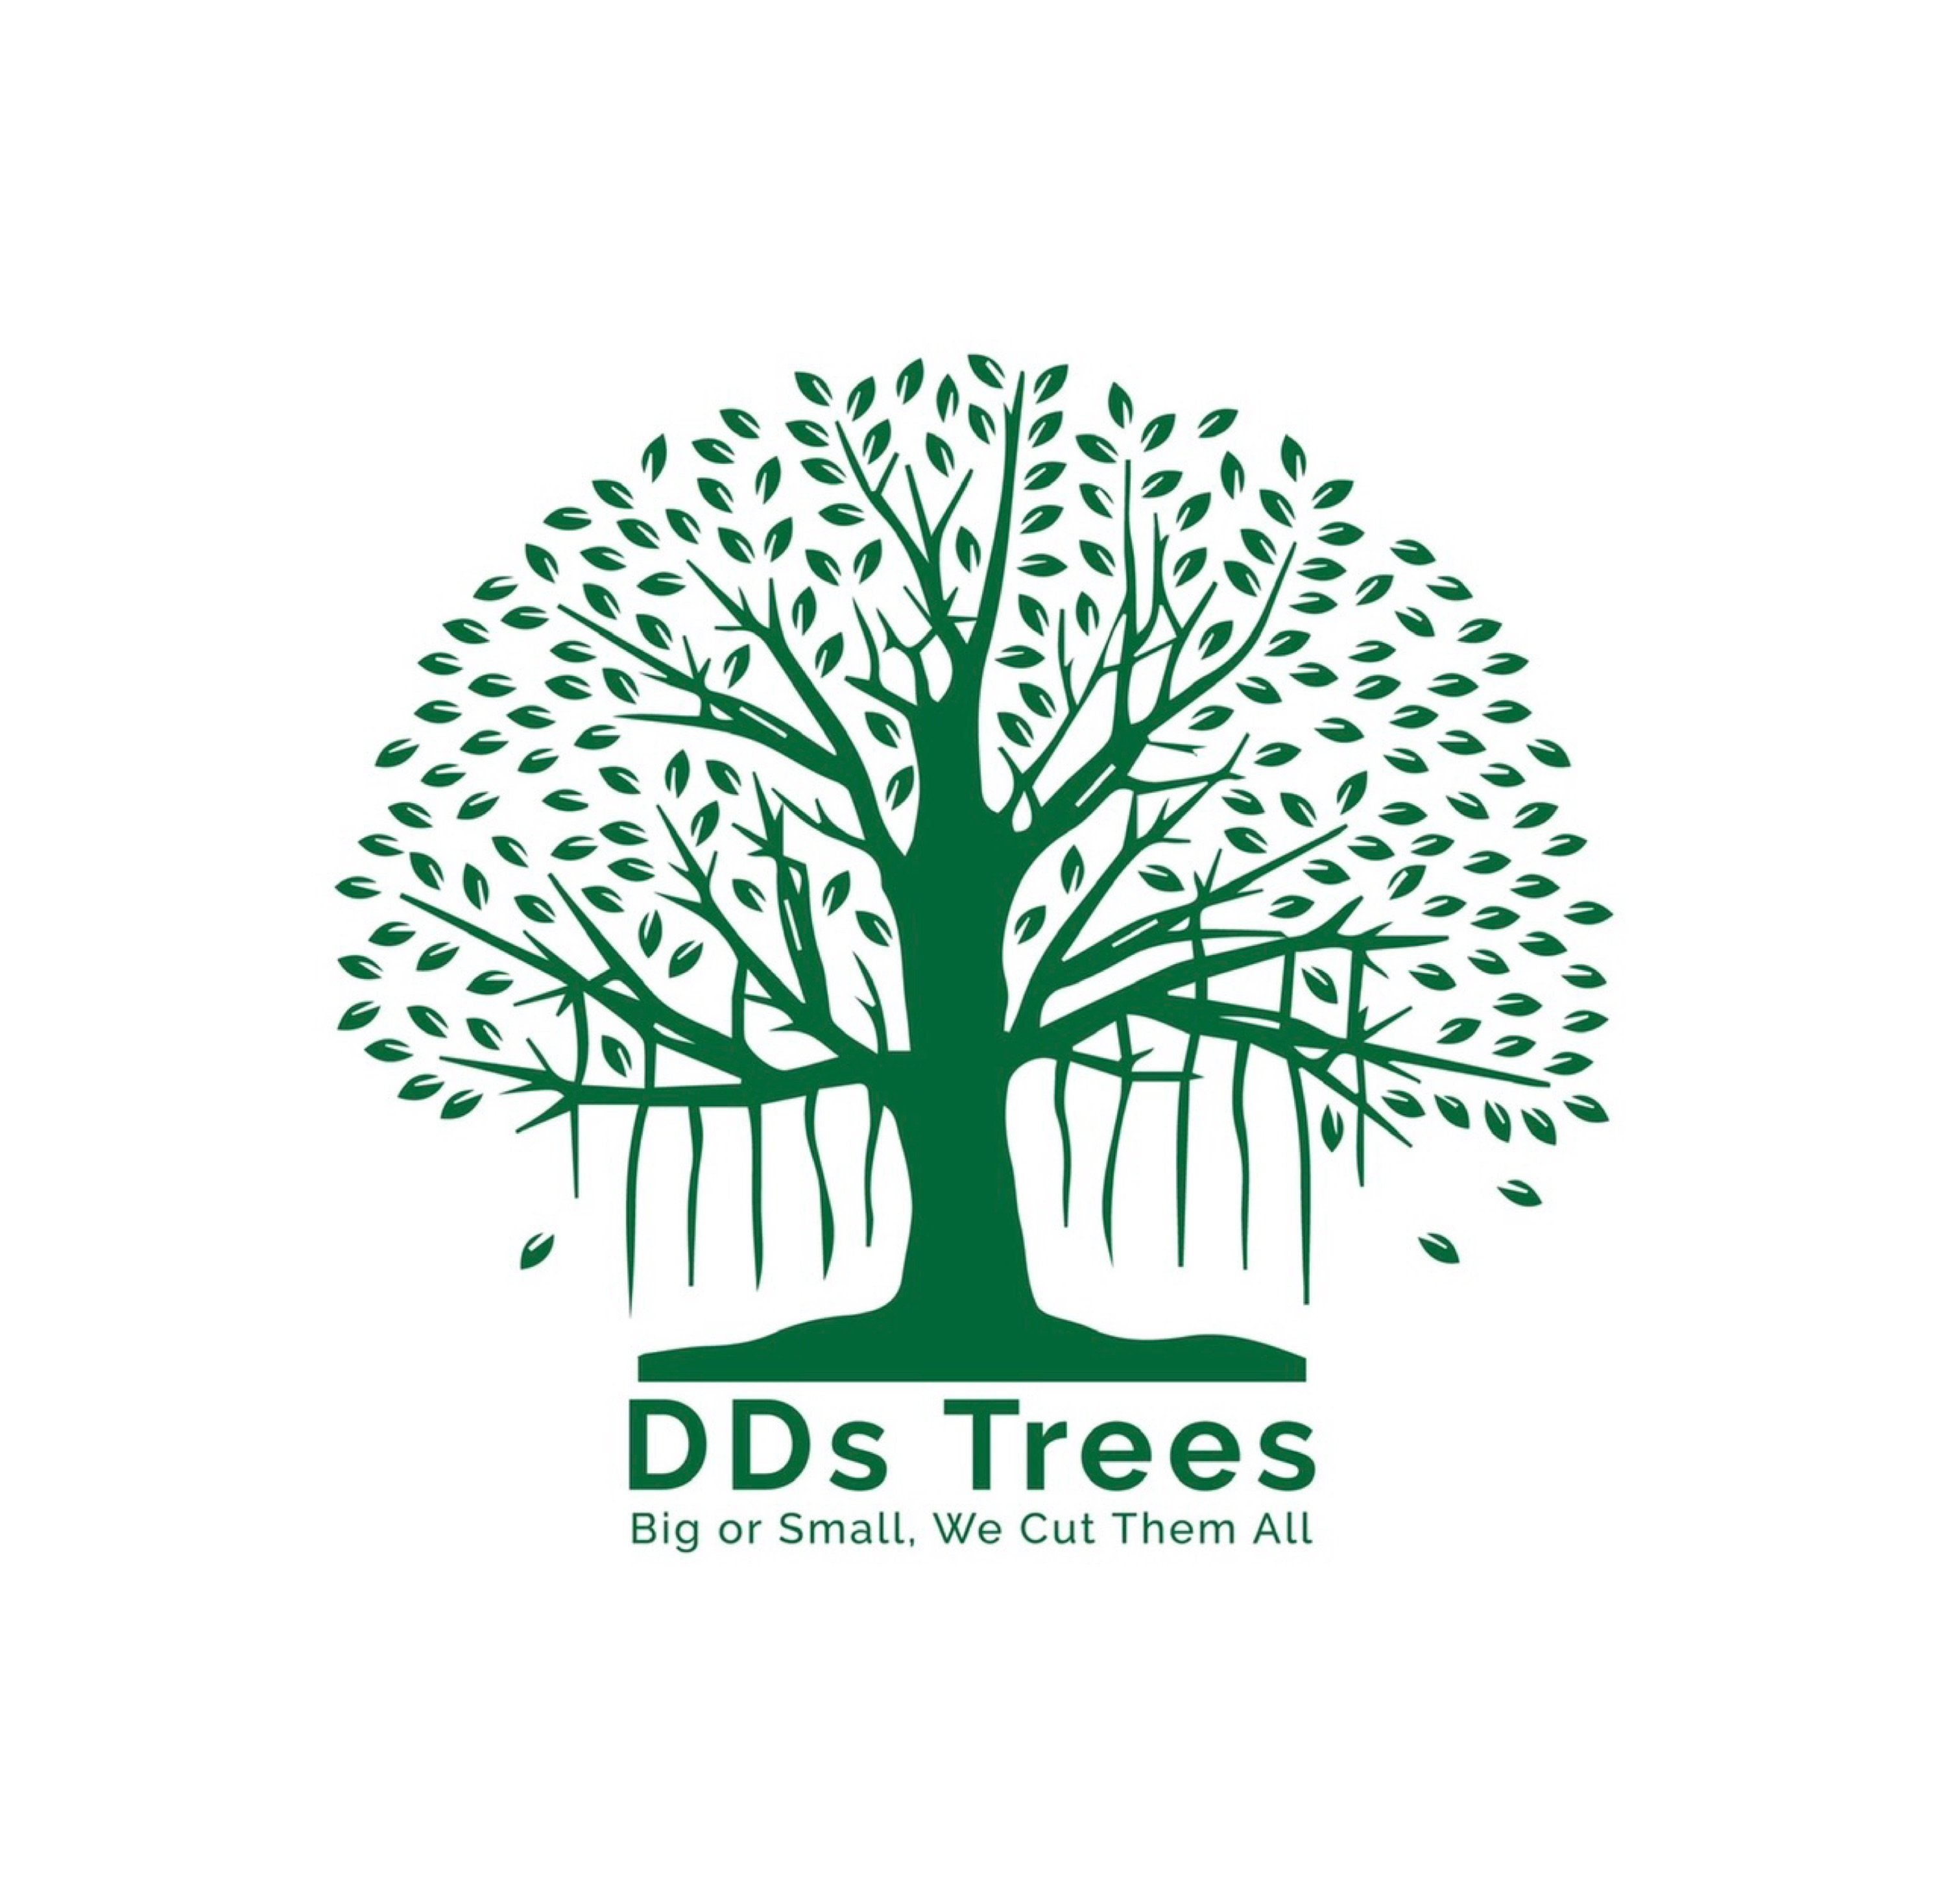 DD's Trees Logo